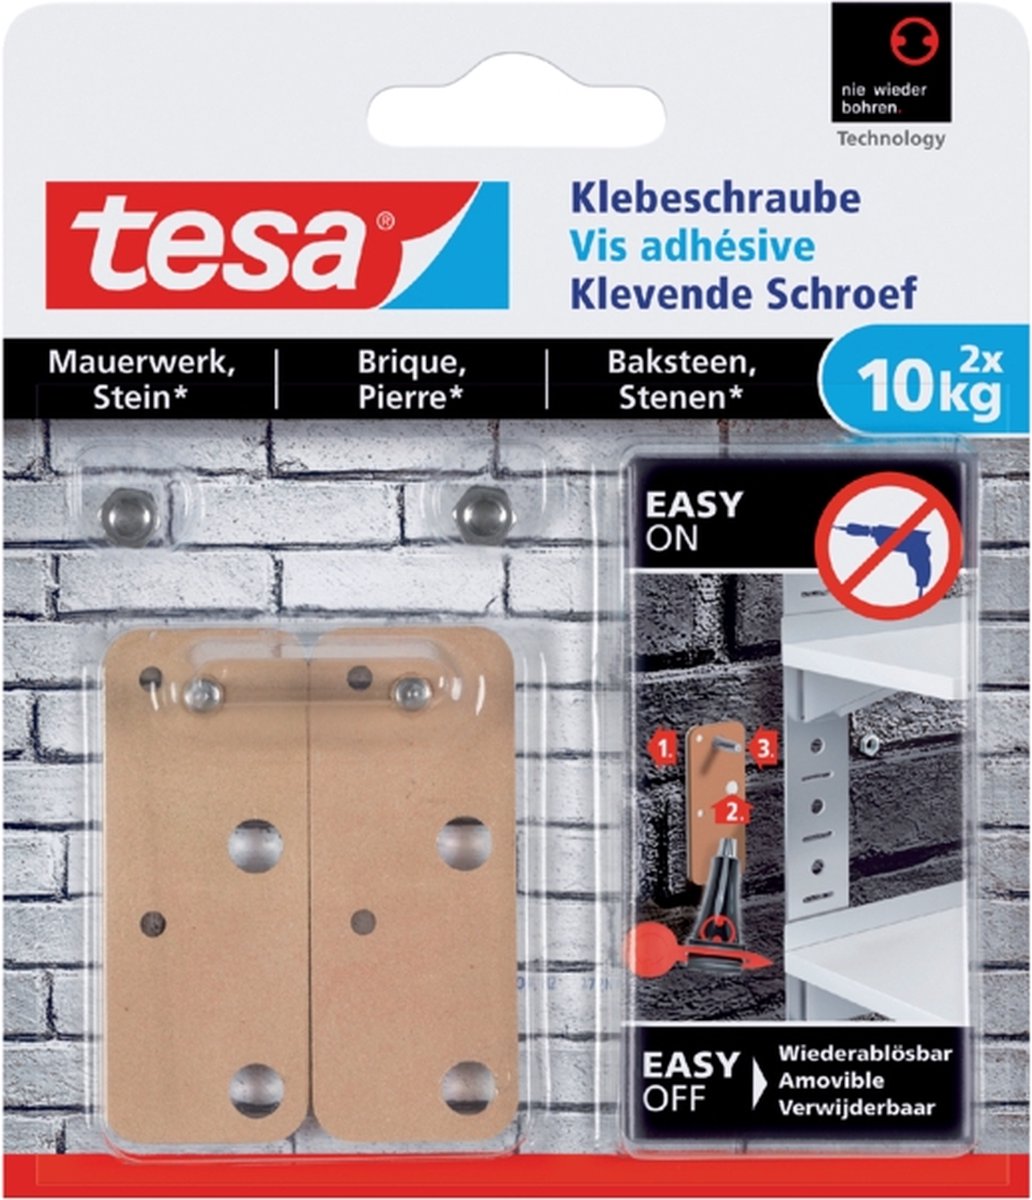 Tesa Klevende schroef - Voor steen en baksteen - belastbaar tot 10 kg - 2 stuks - Tesa